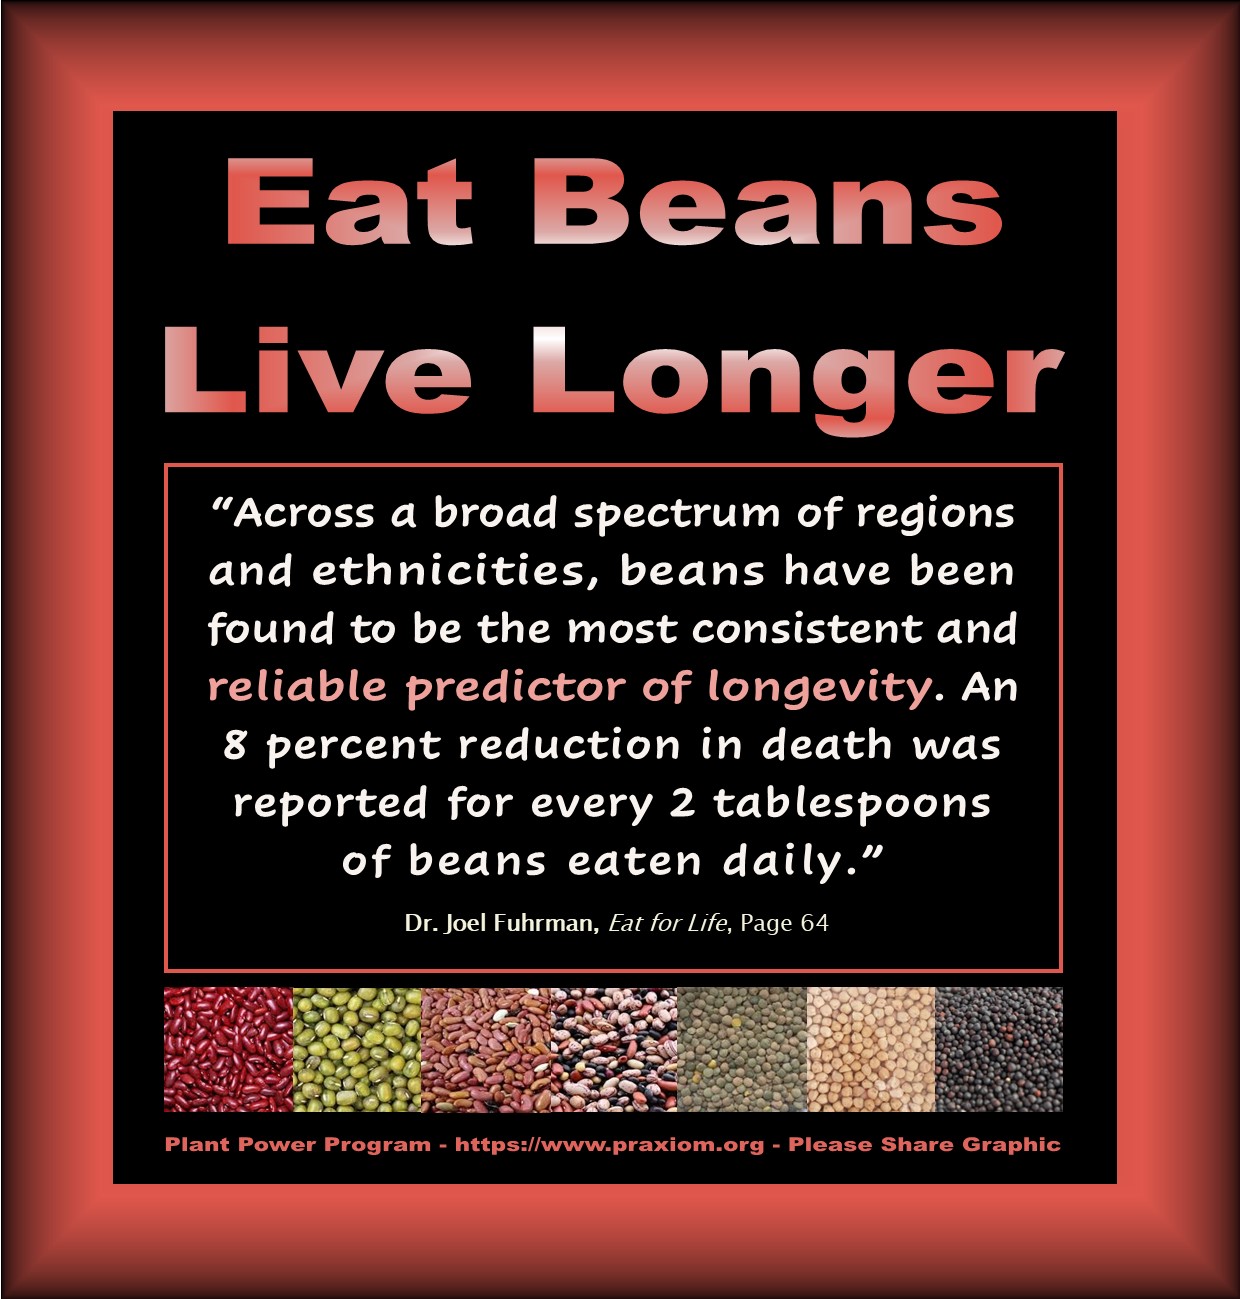 Eat Beans - Live Longer - Dr. Joel Fuhrman